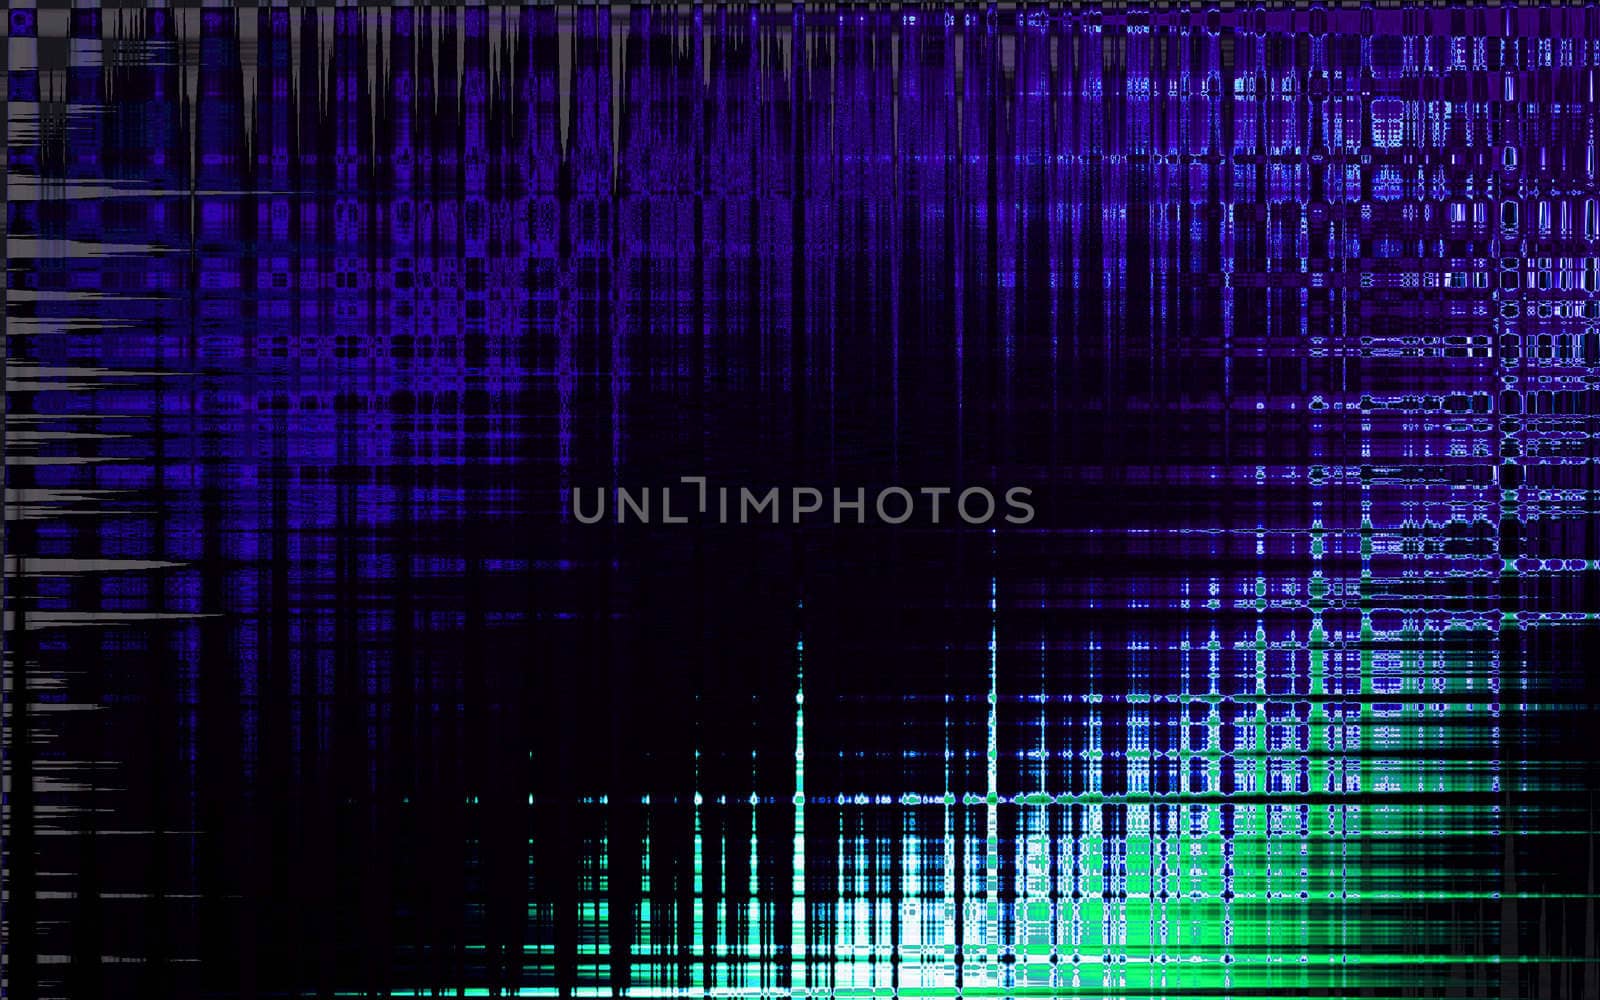 Digital illustration of digital background in blue